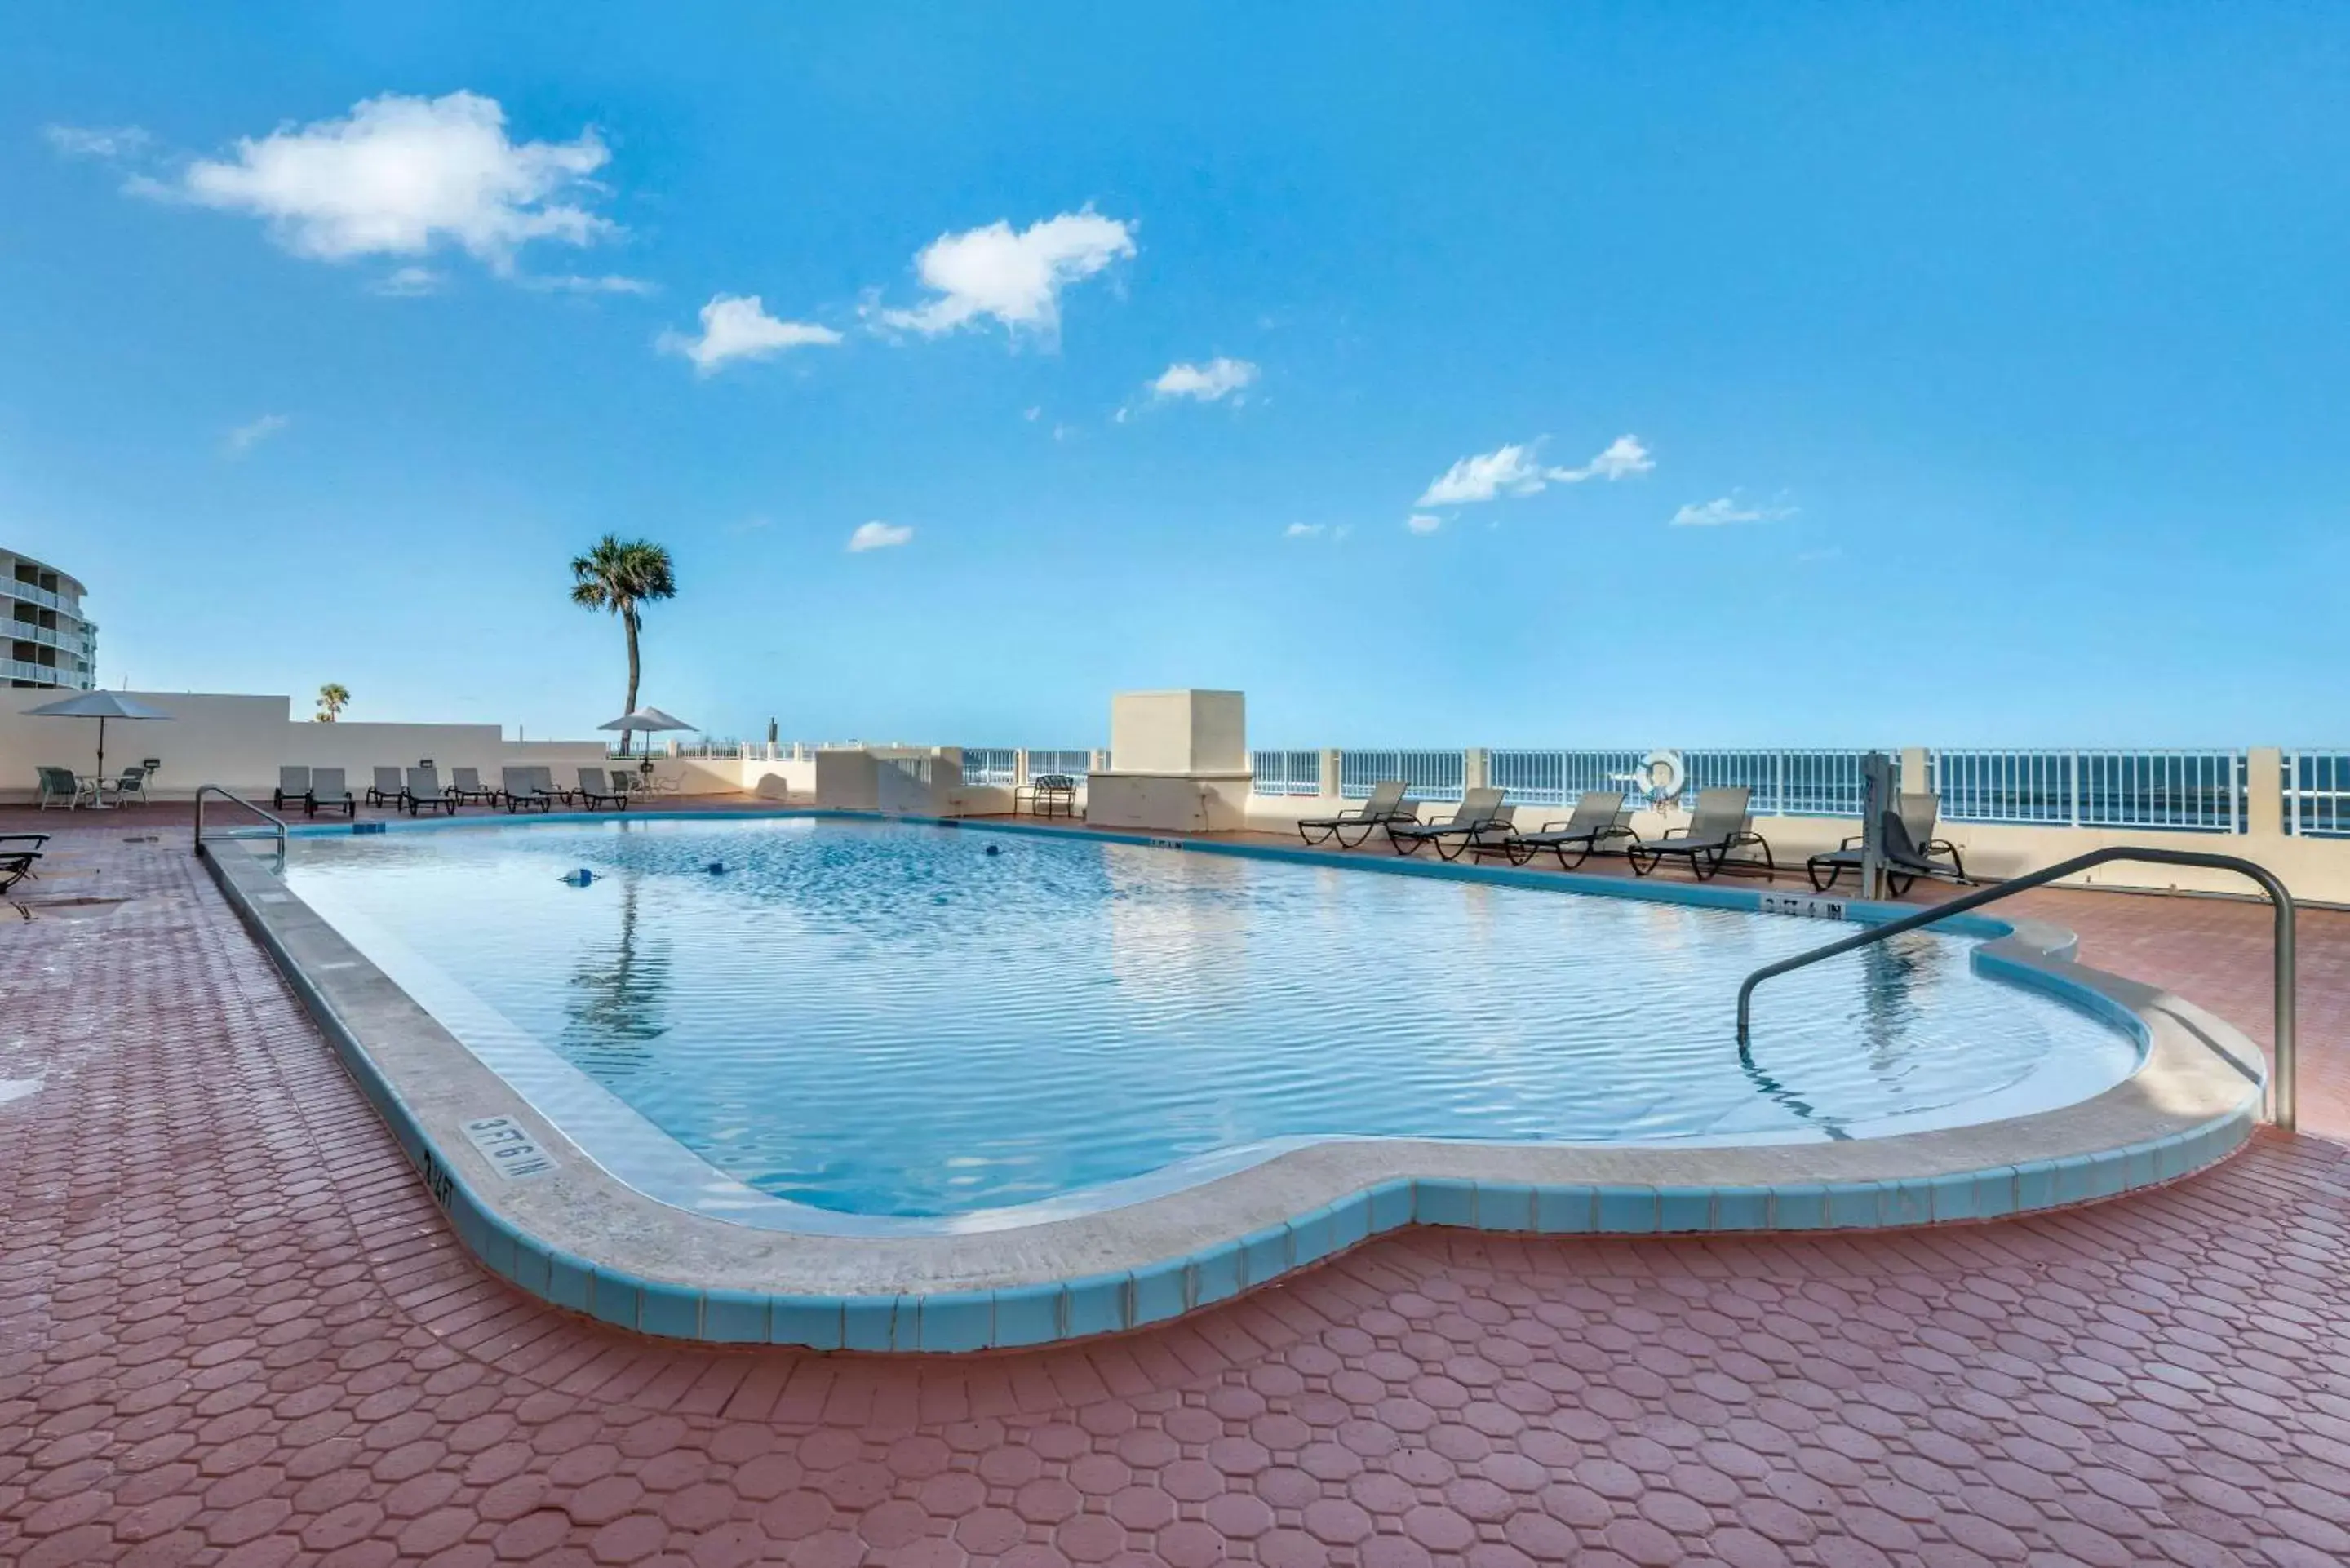 On site, Swimming Pool in Quality Inn Daytona Beach Oceanfront